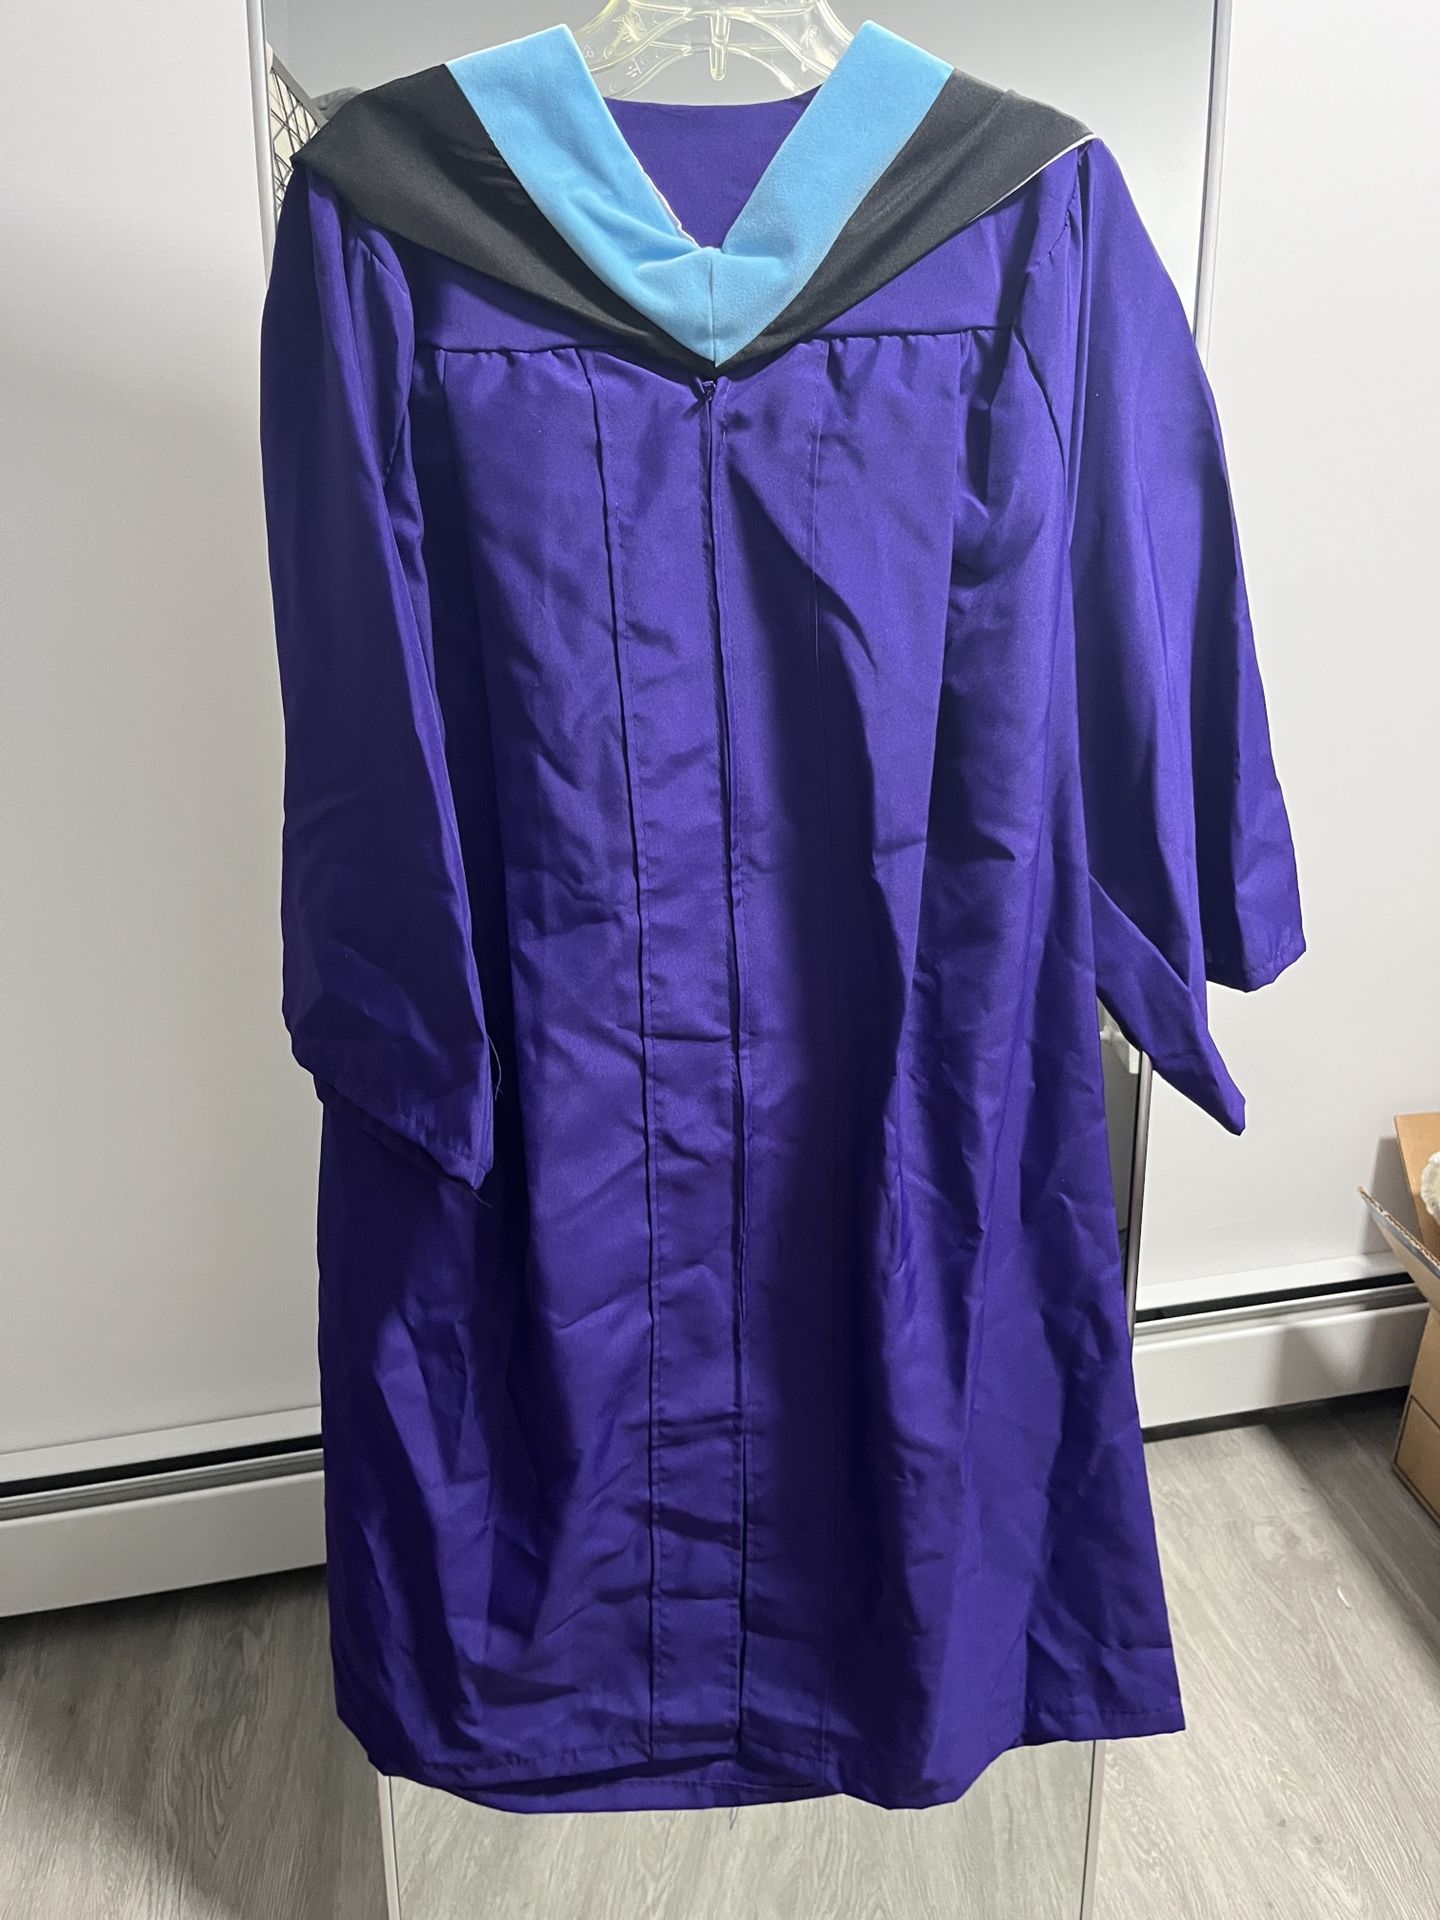 Graduation Gown, No Cap